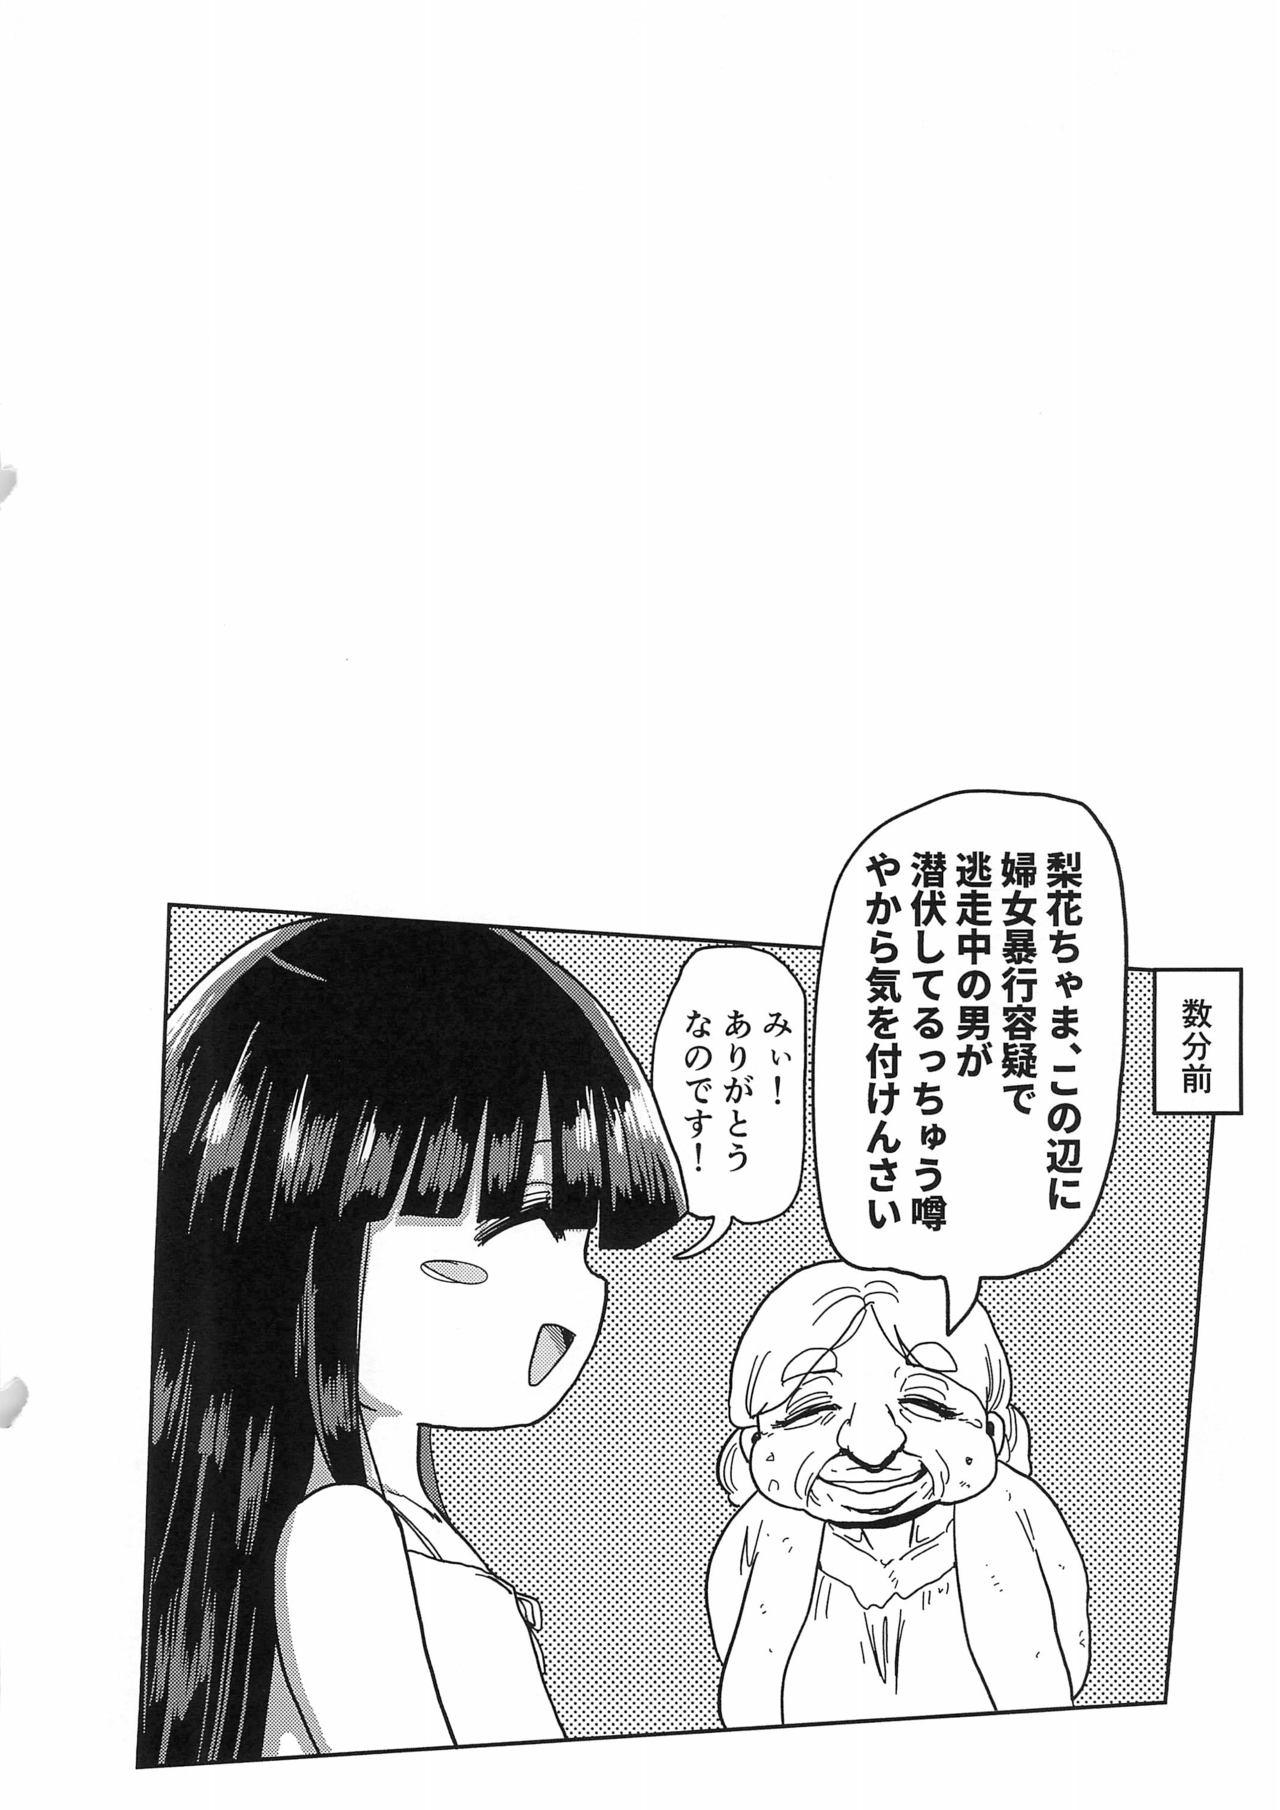 Moaning Kaijou Genteibon Higurashi In Okashi Hen - Higurashi no naku koro ni Freak - Page 2